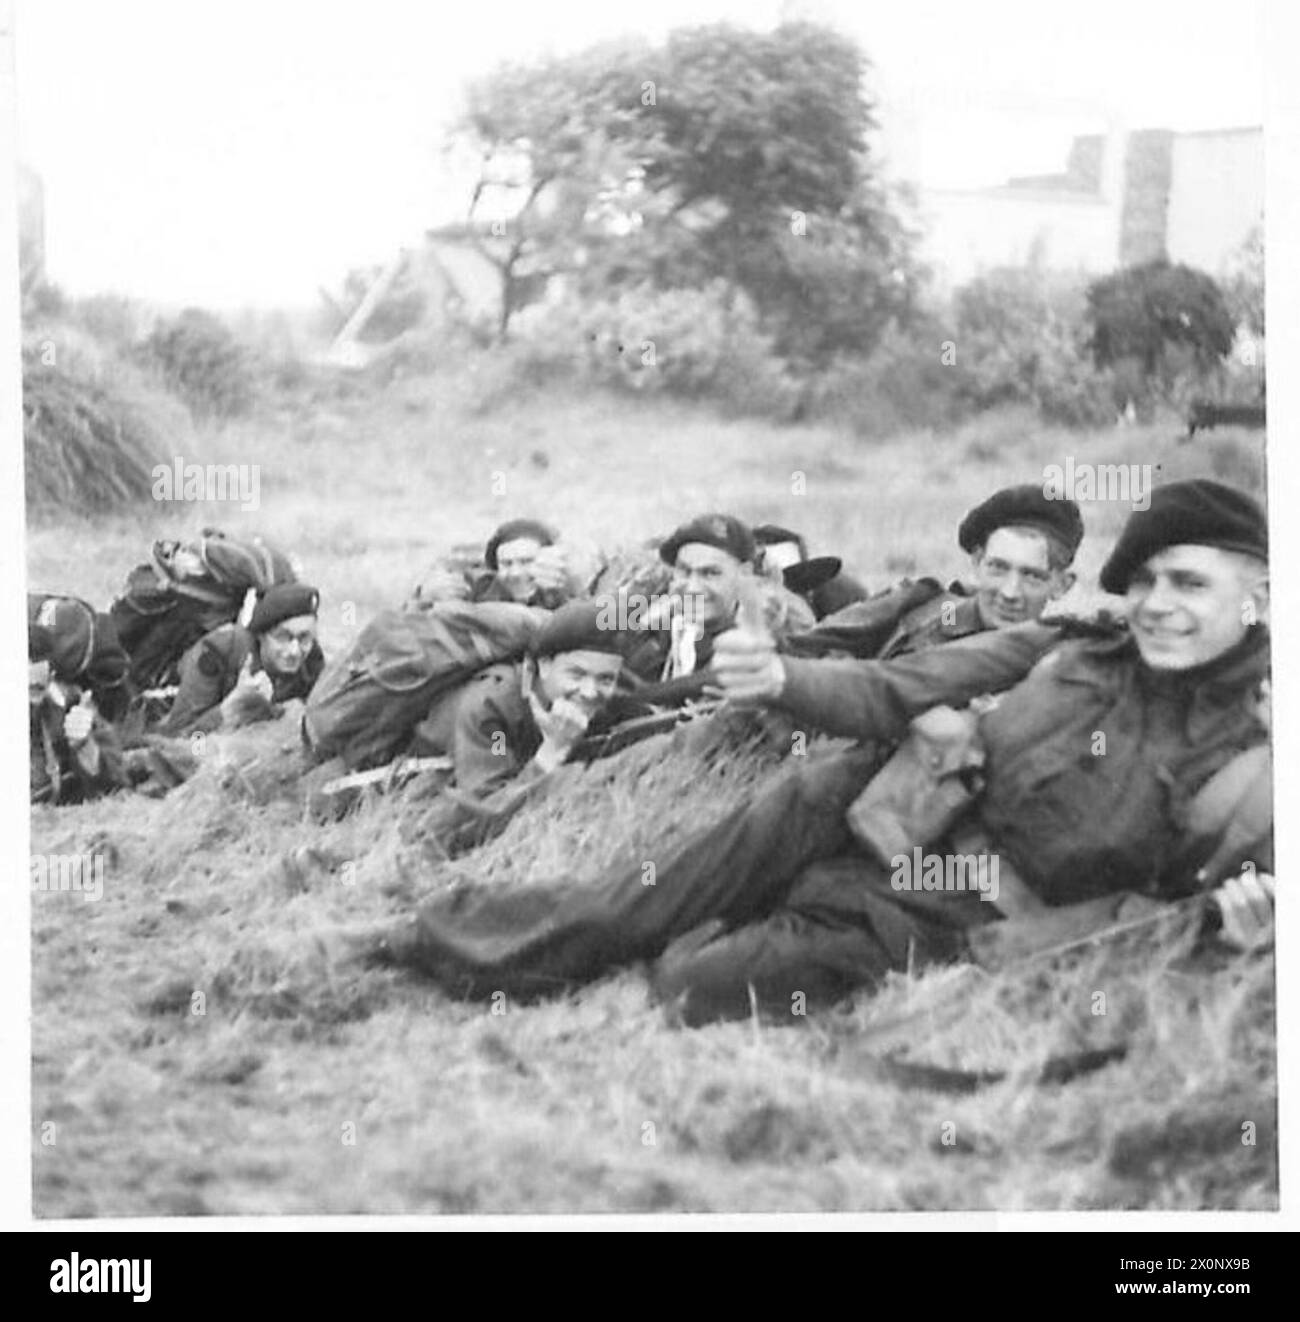 JOUR J - FORCES BRITANNIQUES LORS DE L'INVASION DE LA NORMANDIE 6 JUIN 1944 - Commandos de la 1re brigade de services spéciaux dans les dunes derrière la plage de la Reine Rouge, zone de l'épée, 6 juin 1944 Banque D'Images